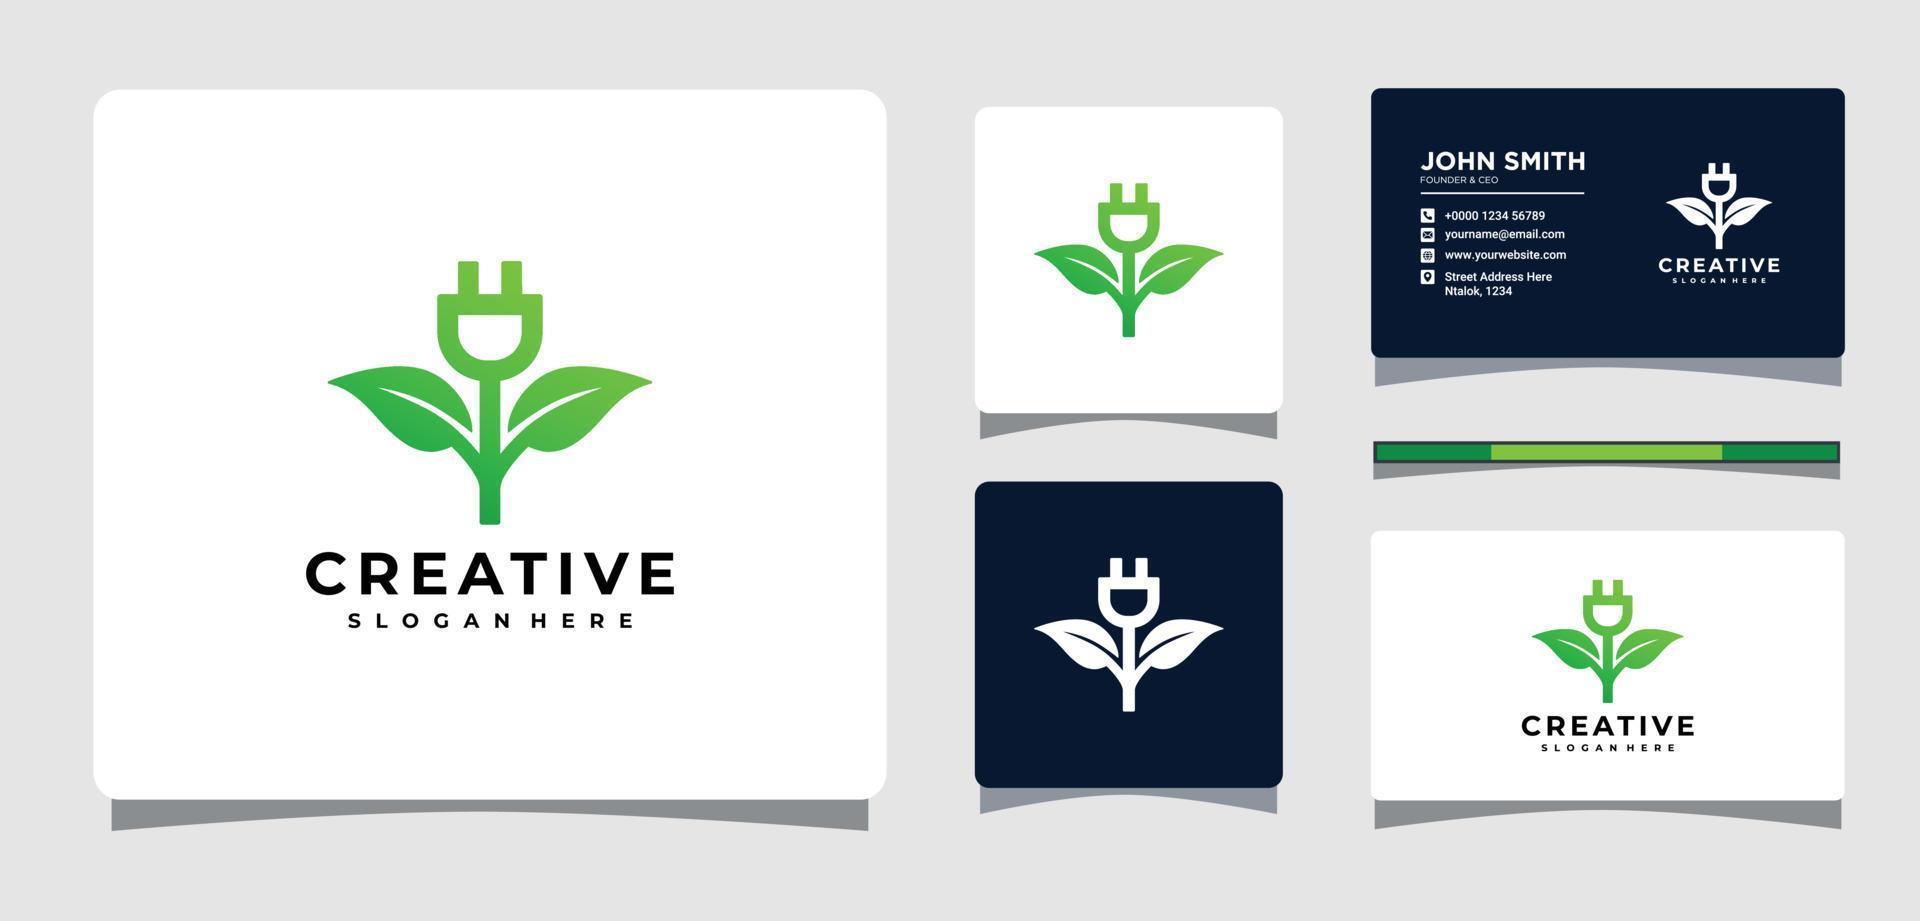 Logo-Vorlage für grünes Blatt mit elektrischem Stecker und Visitenkarten-Design-Inspiration vektor